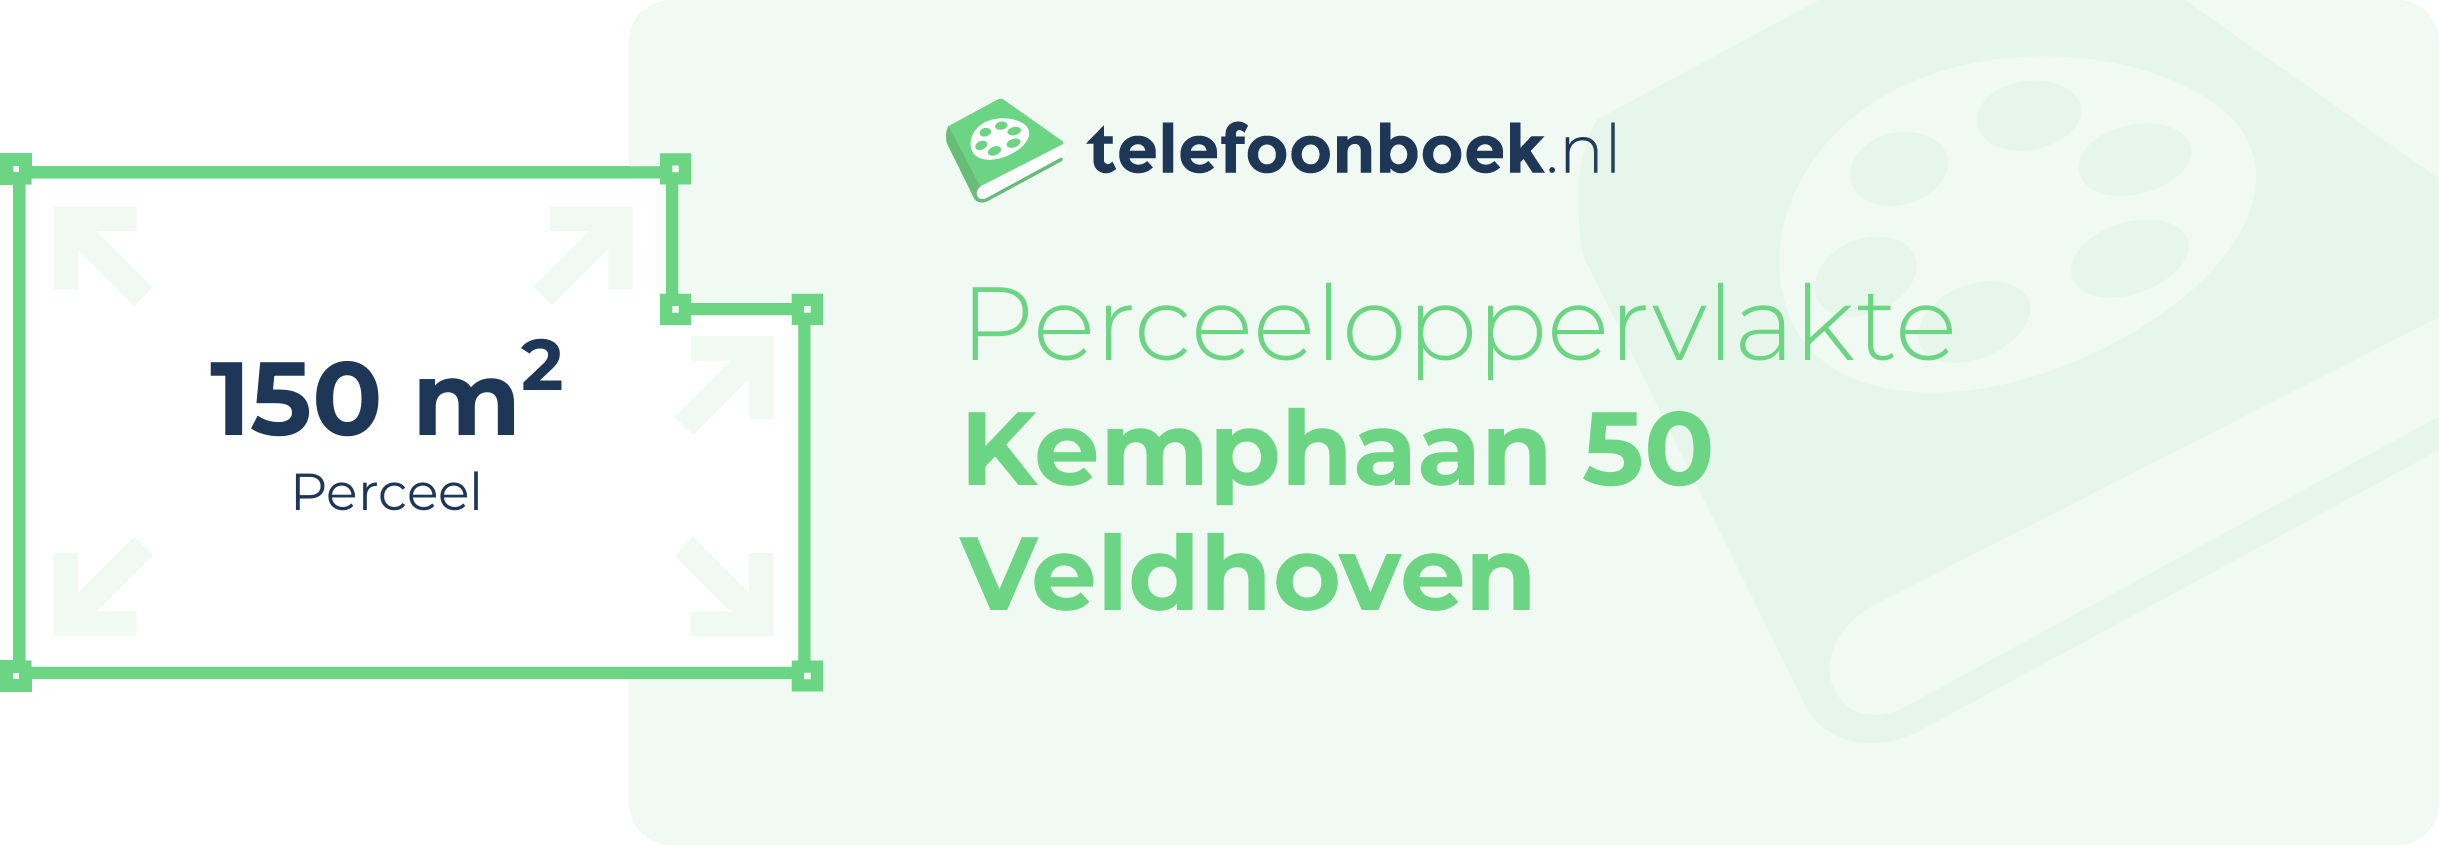 Perceeloppervlakte Kemphaan 50 Veldhoven